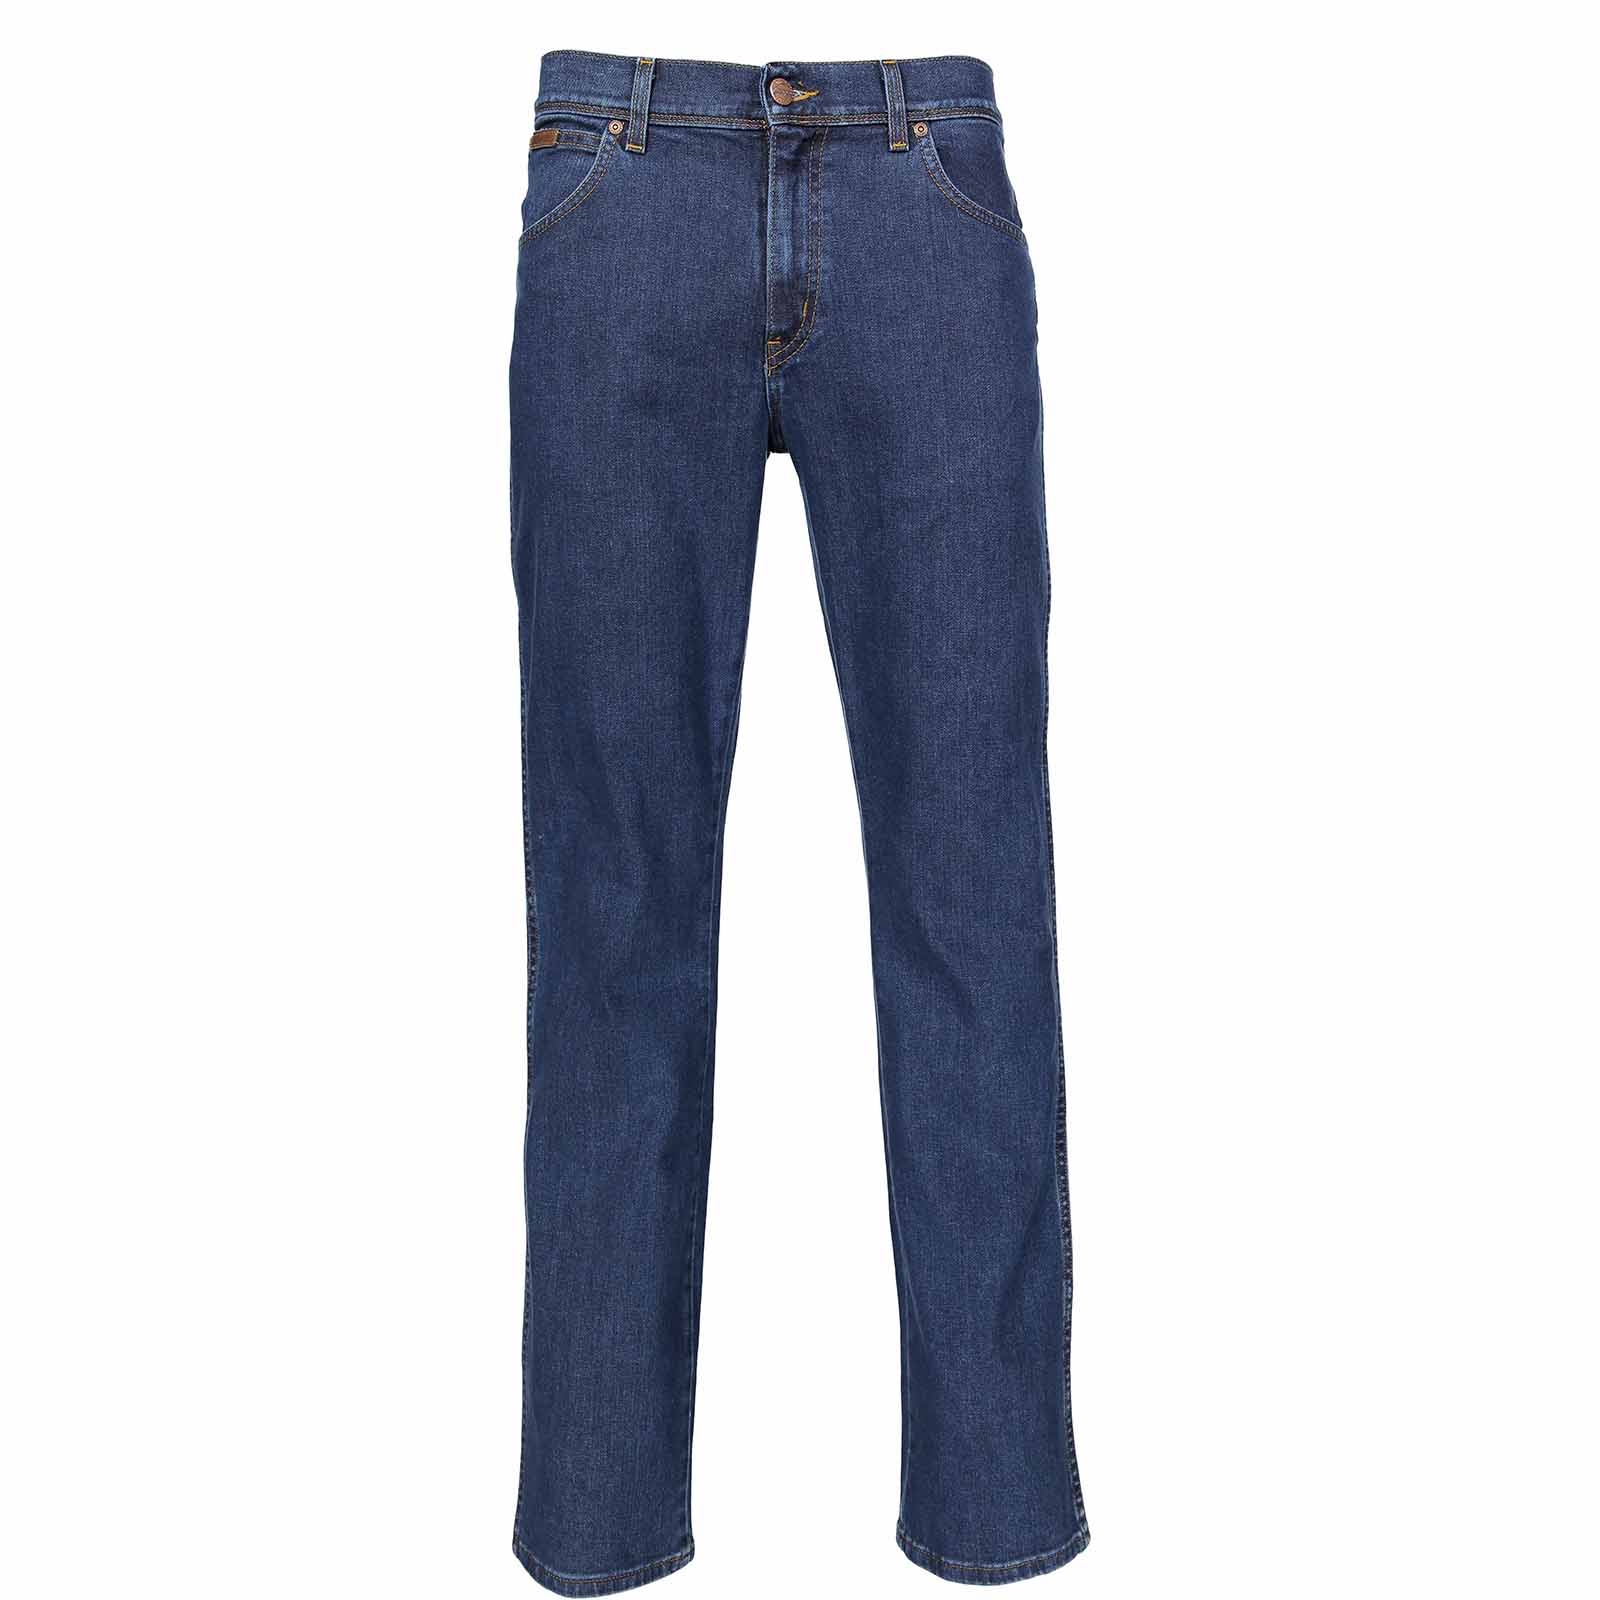 фото Джинсы мужские wrangler men texas jeans синие 36/30